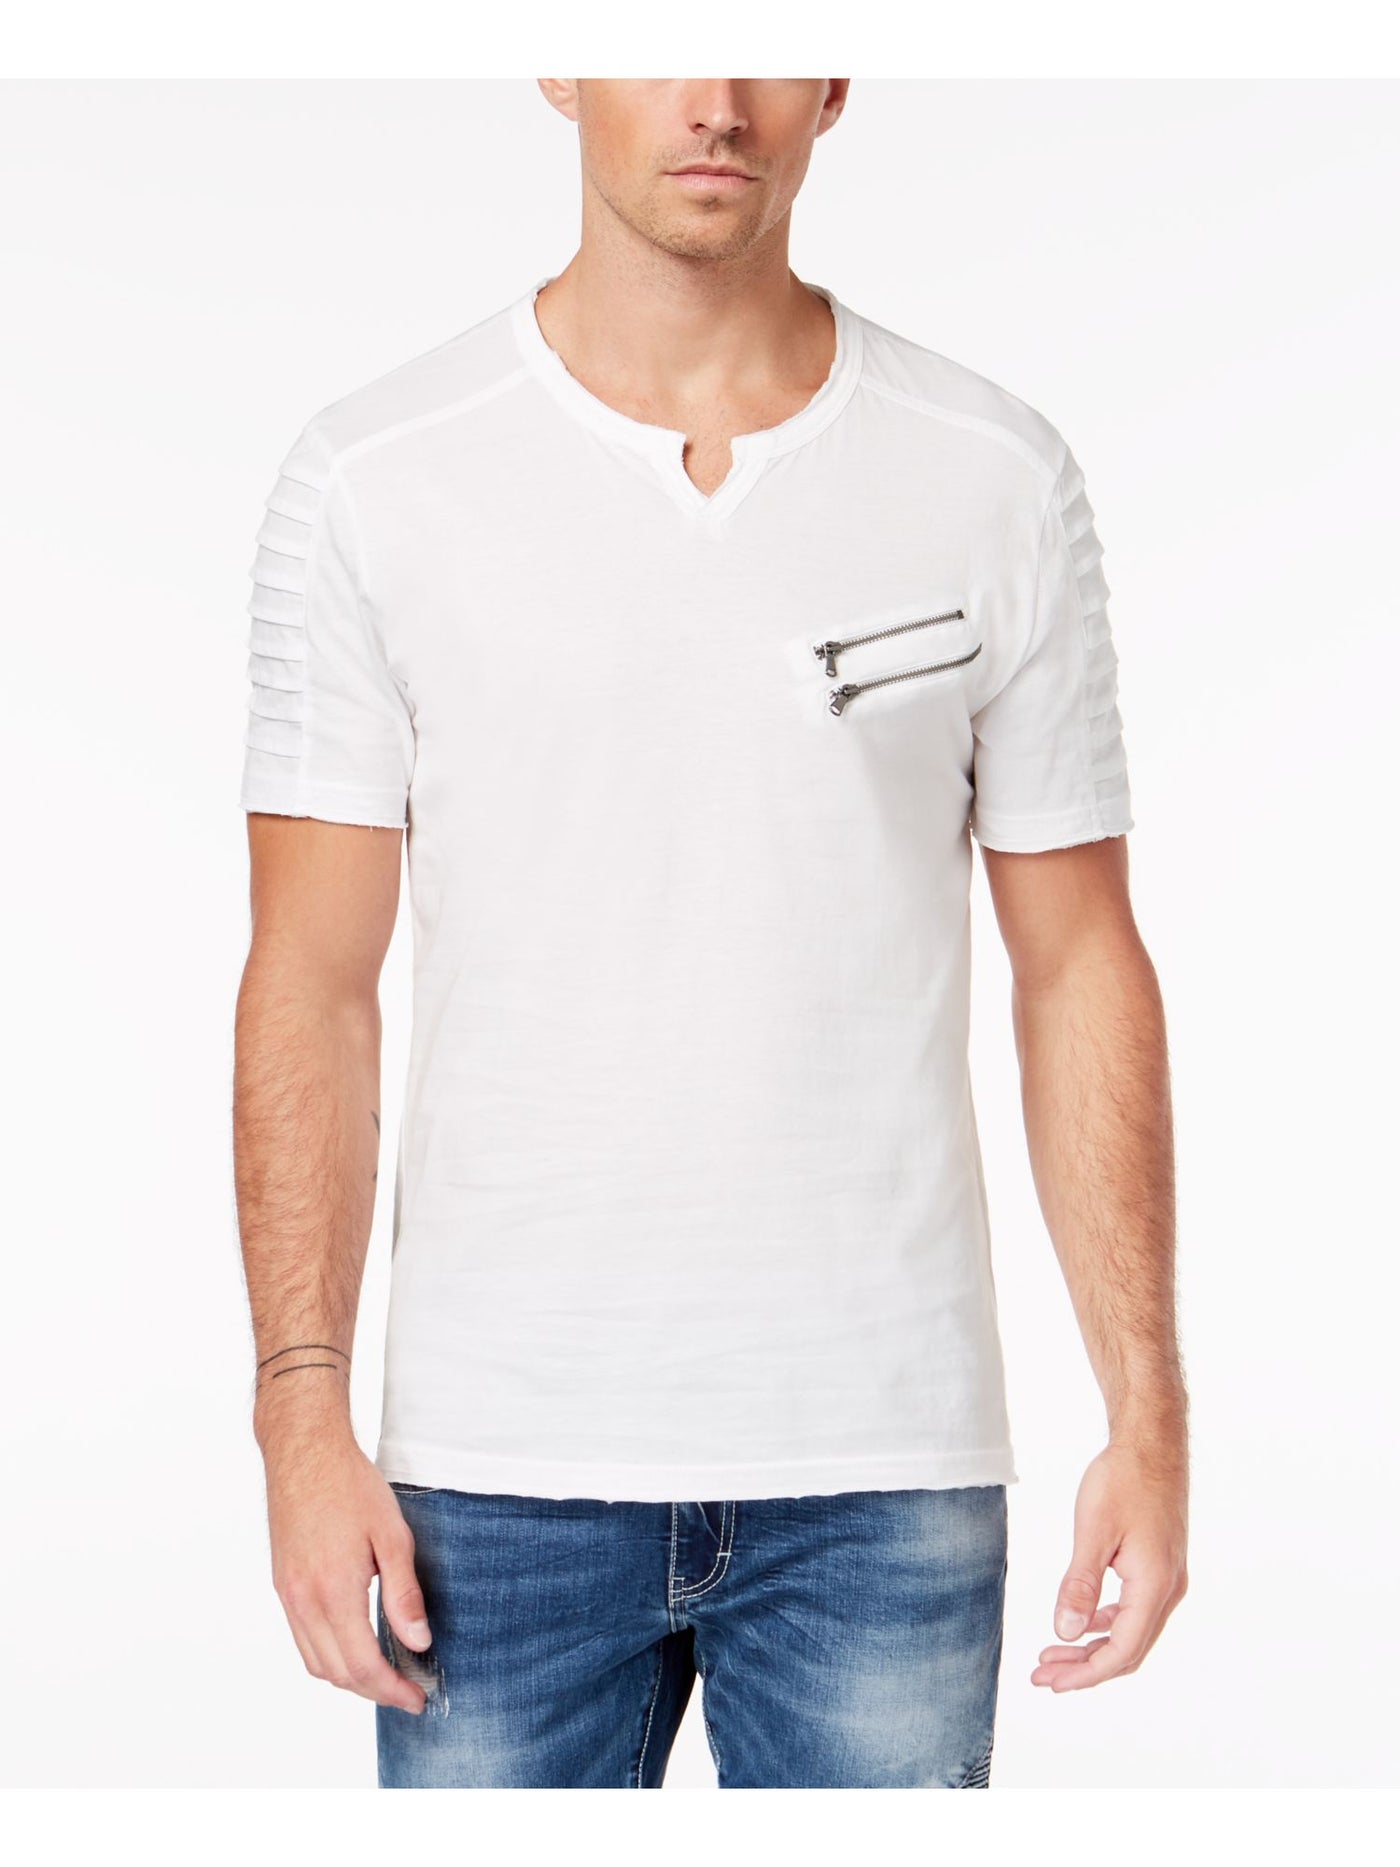 INC Mens White Casual Shirt XL Tall